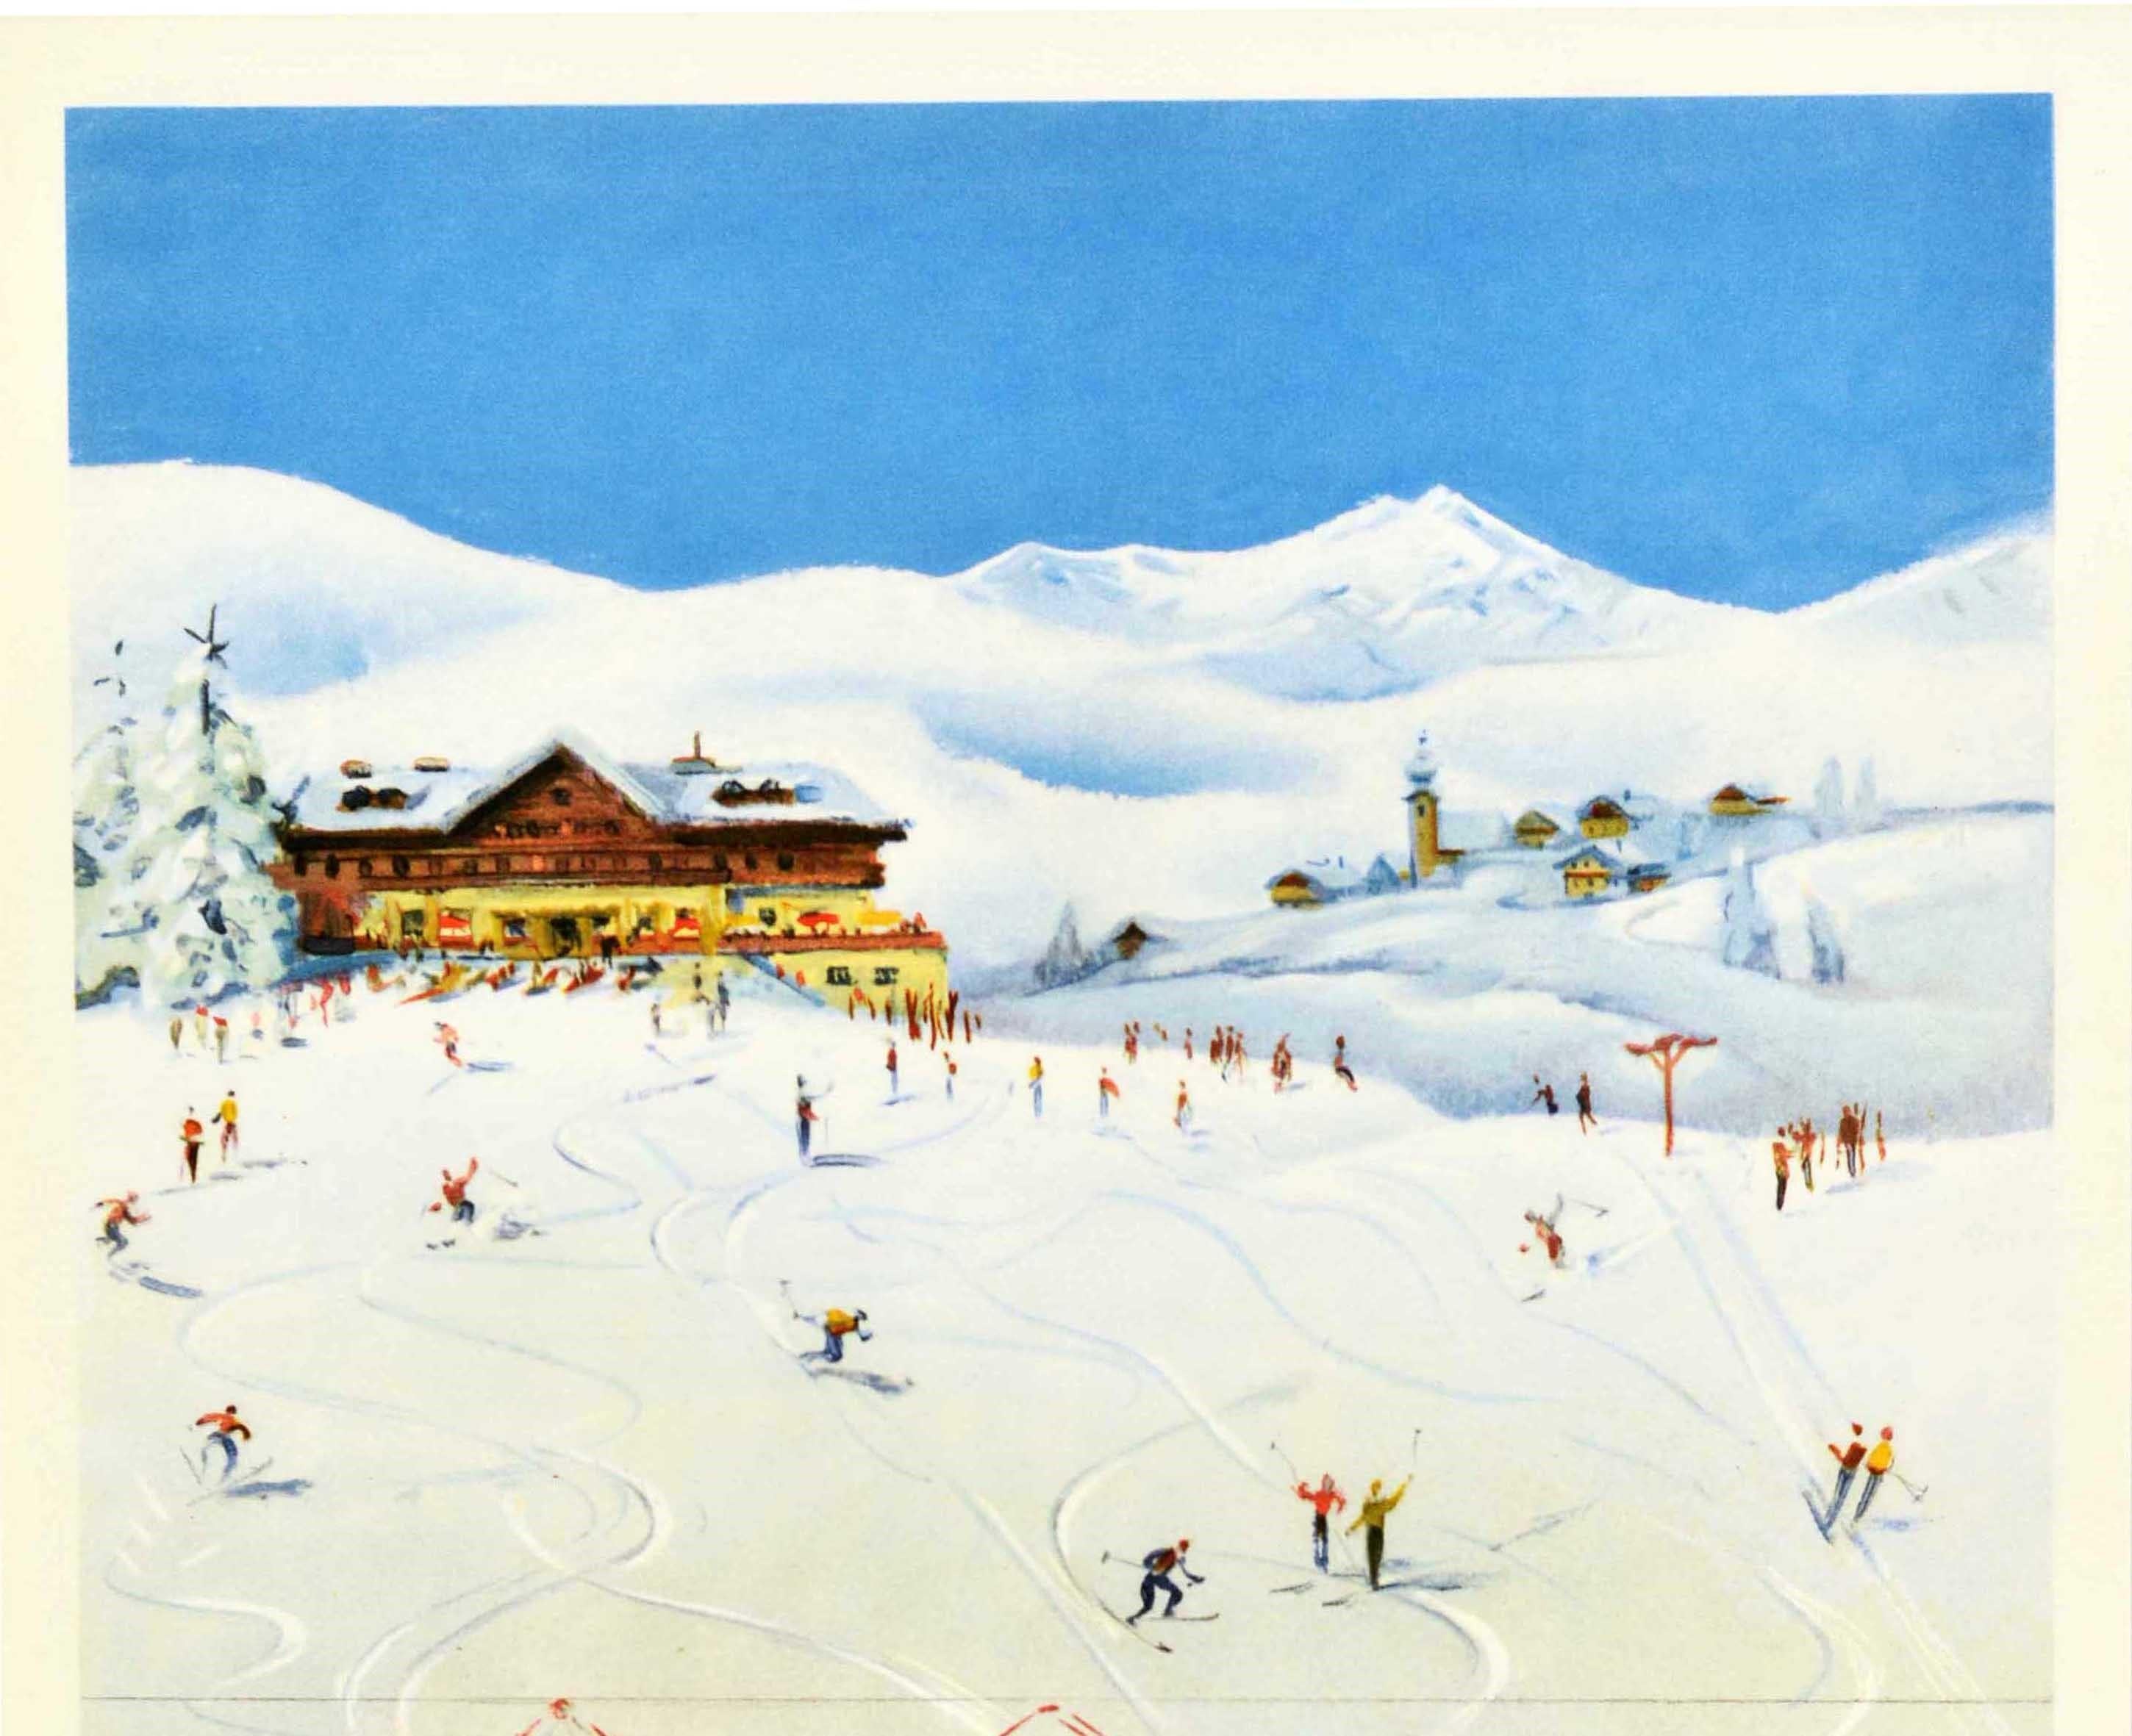 Affiche originale vintage de sport d'hiver et de voyage à ski - Autriche OBB Chemins de Fer Federaux Autrichiens / Autriche OBB Austrian Federal Railways - représentant des skieurs sur une colline enneigée qui descendent et prennent un téléski sur